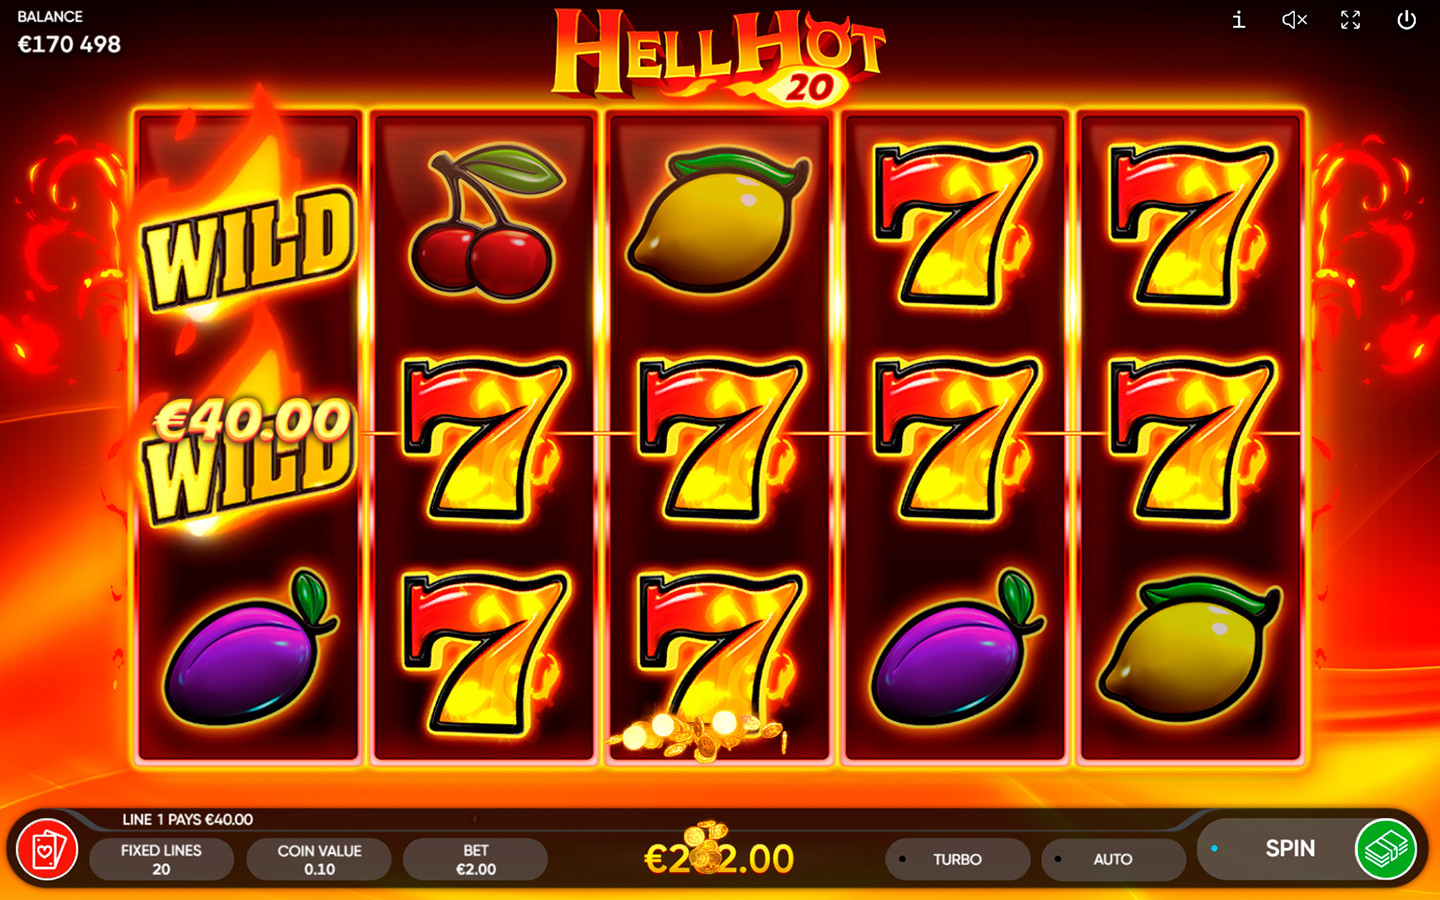 Актуальная классическая тема на игровом слоте «Hell Hot 20» в Адмирал казино